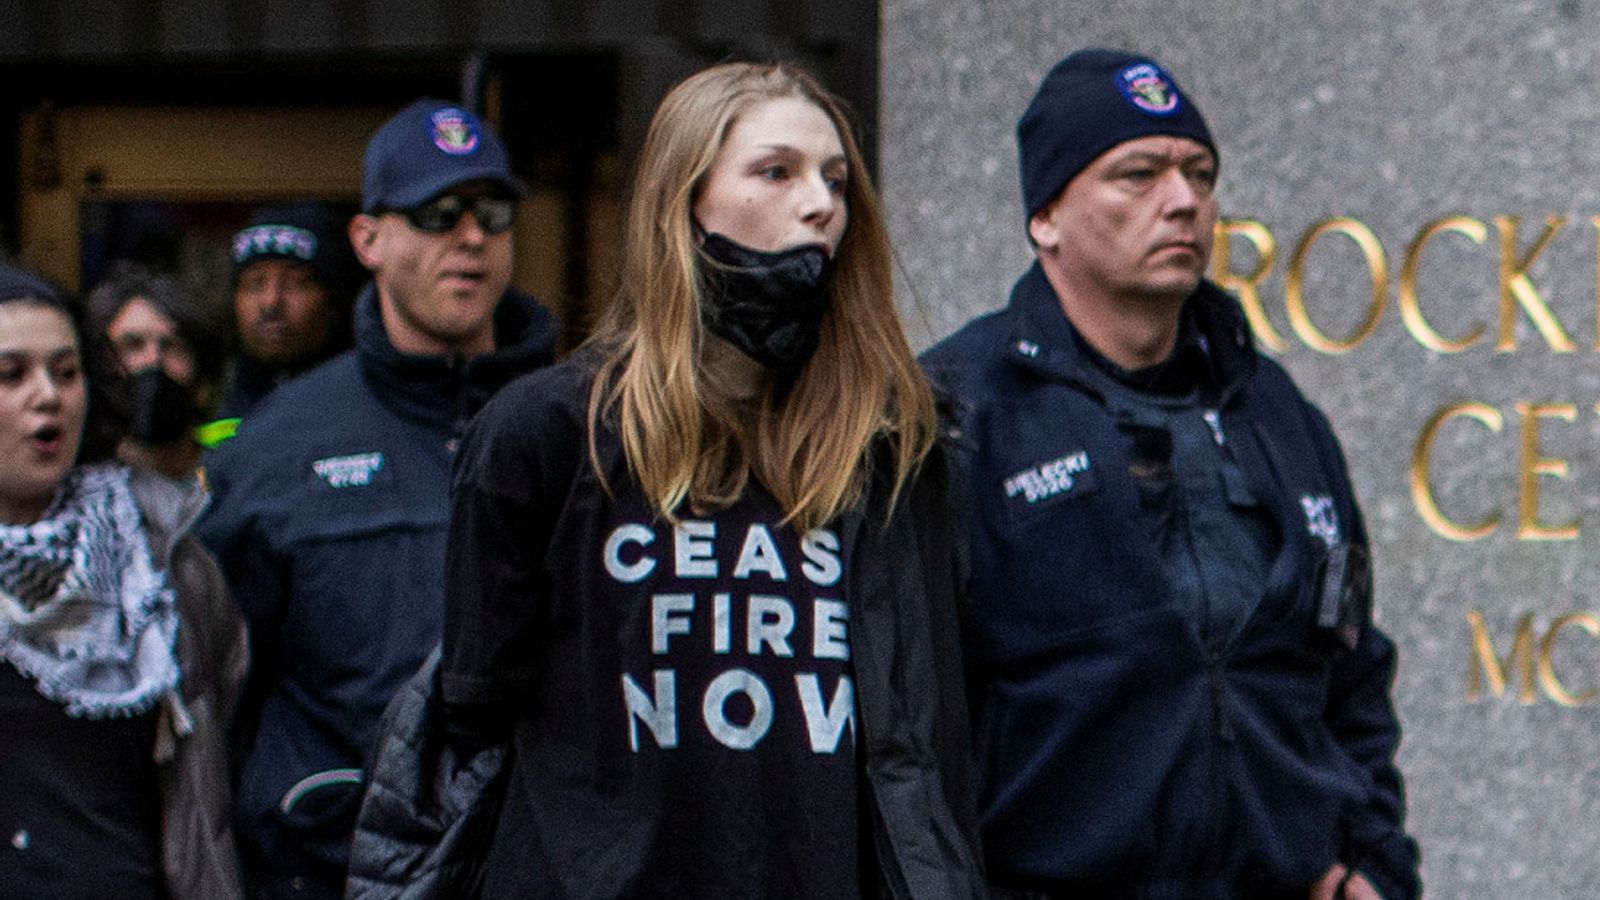 Звездата от Euphoria Хънтър Шафър е арестуван на пропалестински протест в Ню Йорк по време на телевизионно участие на Джо Байдън